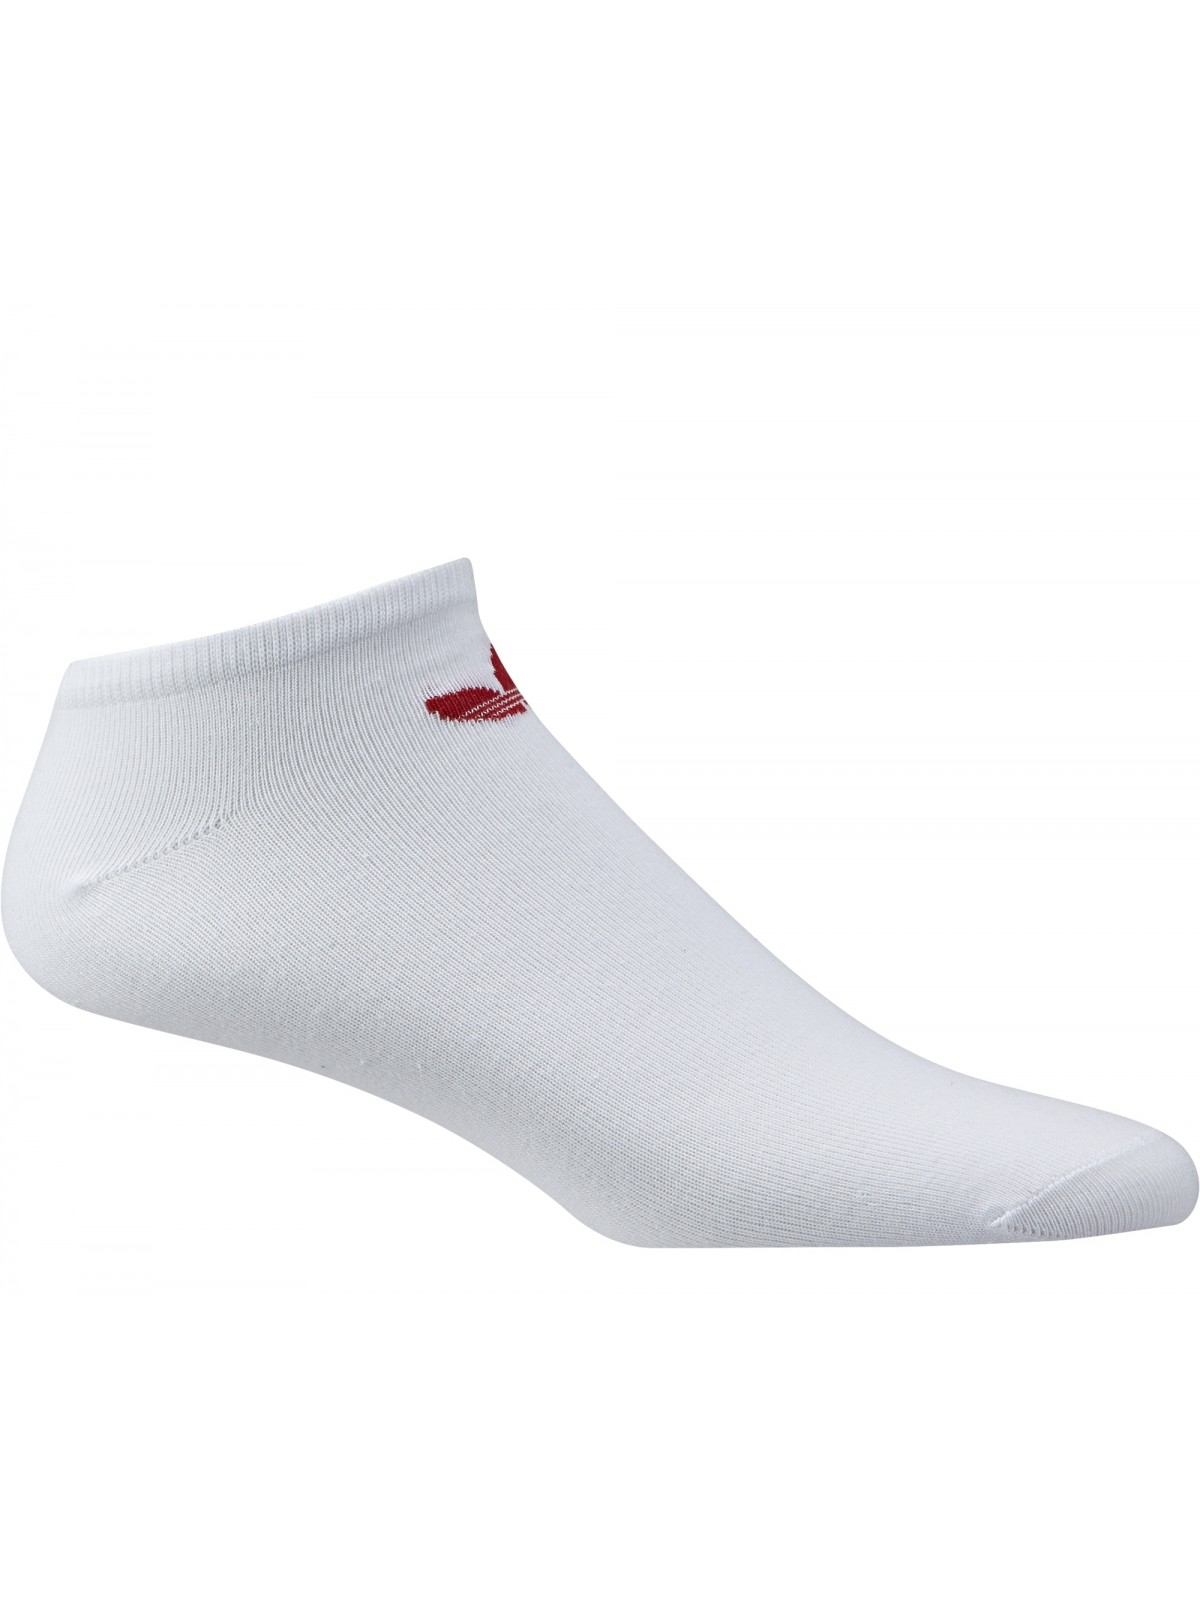 ADIDAS chaussettes courtes blanc / rouge